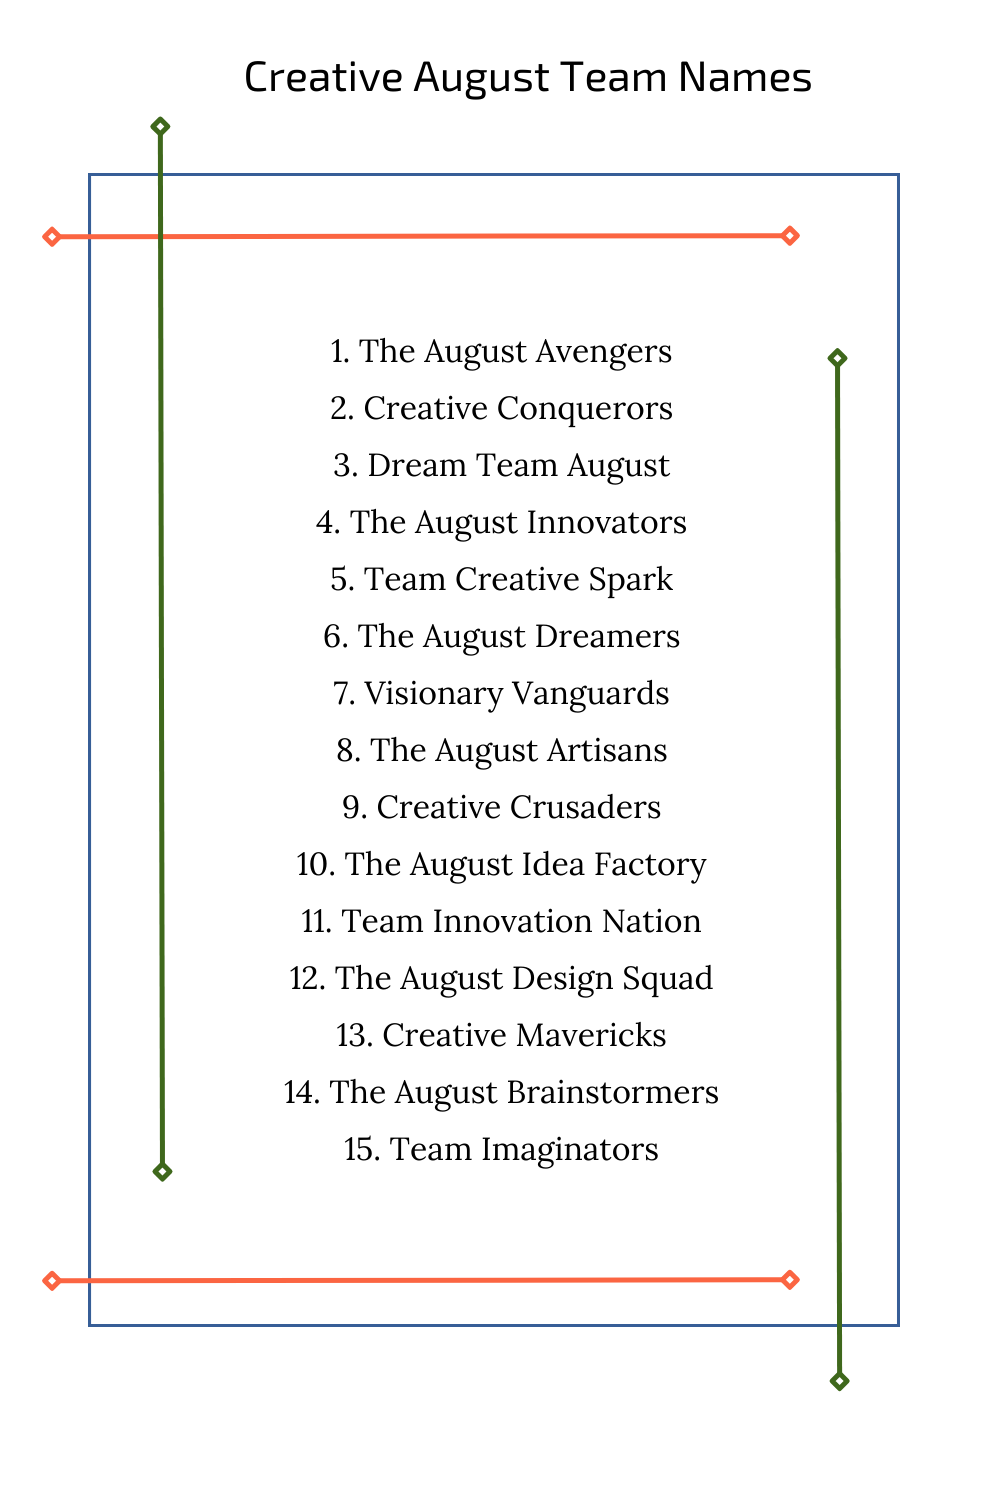 Creative August Team Names